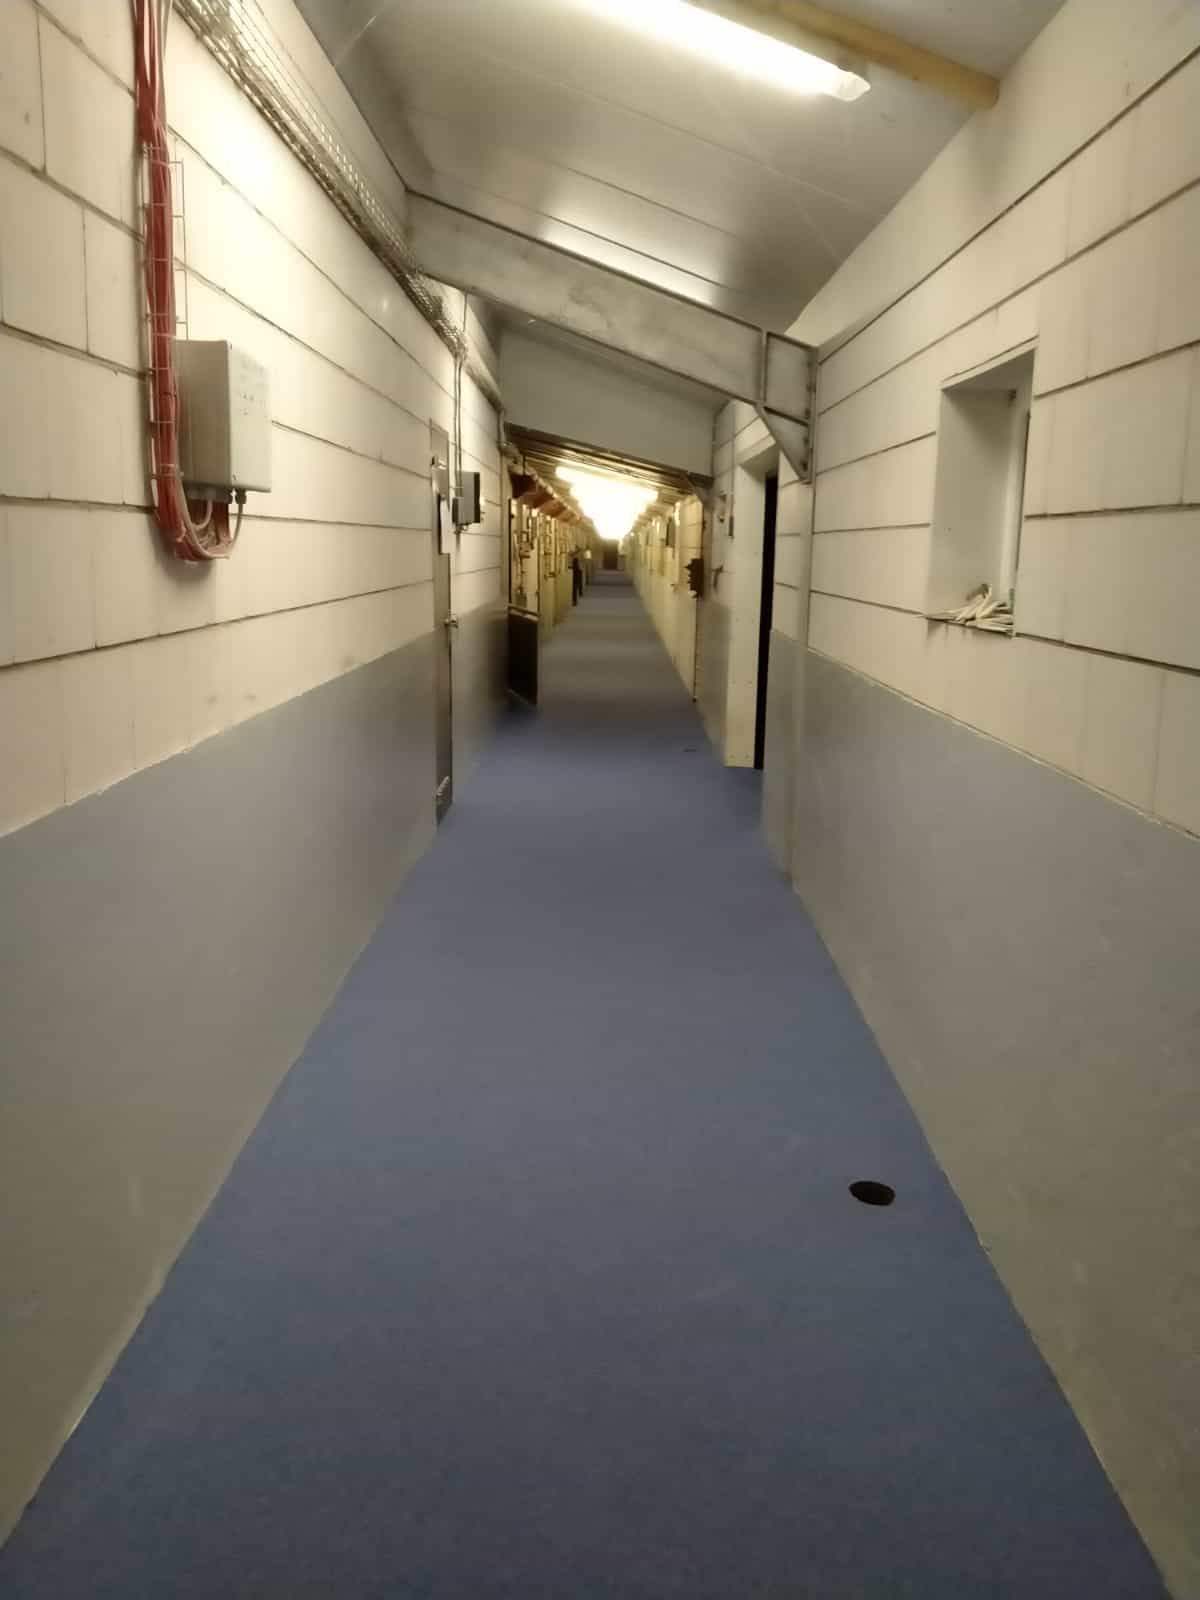 Centrale gangen coating